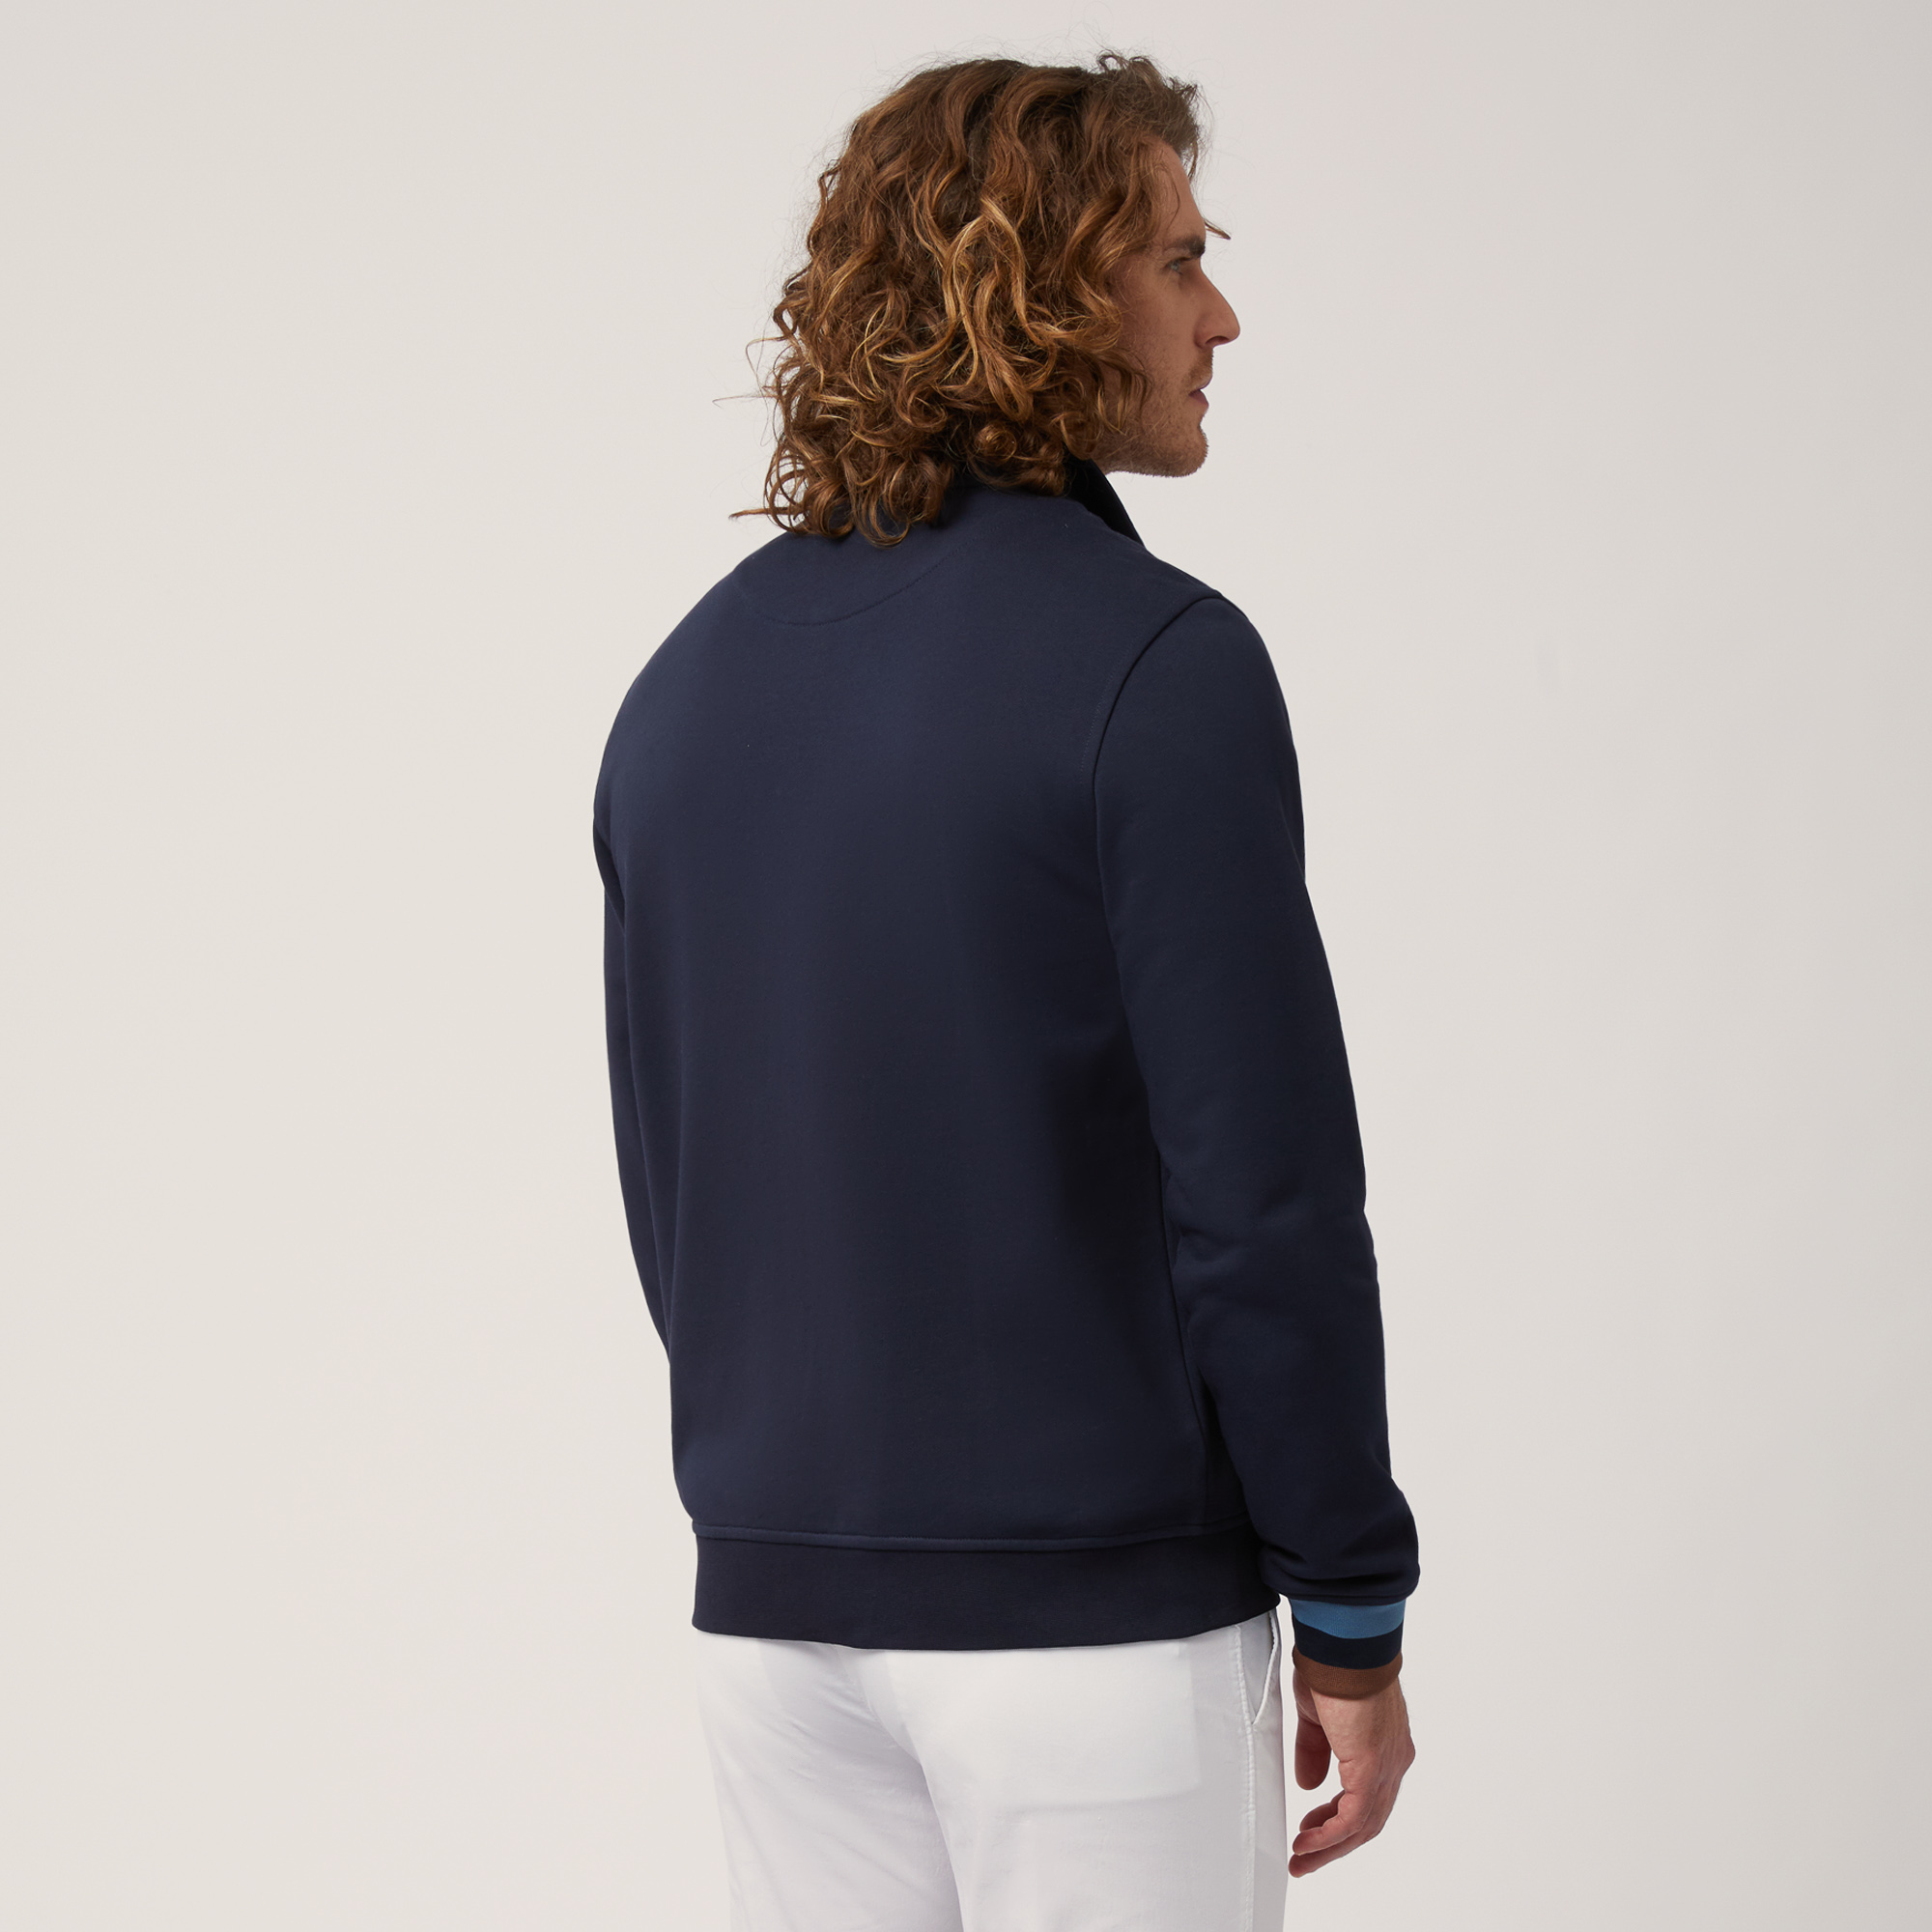 Sweatshirt aus Baumwolle mit durchgehendem Reißverschluss und gestreiften Details, Blau, large image number 1